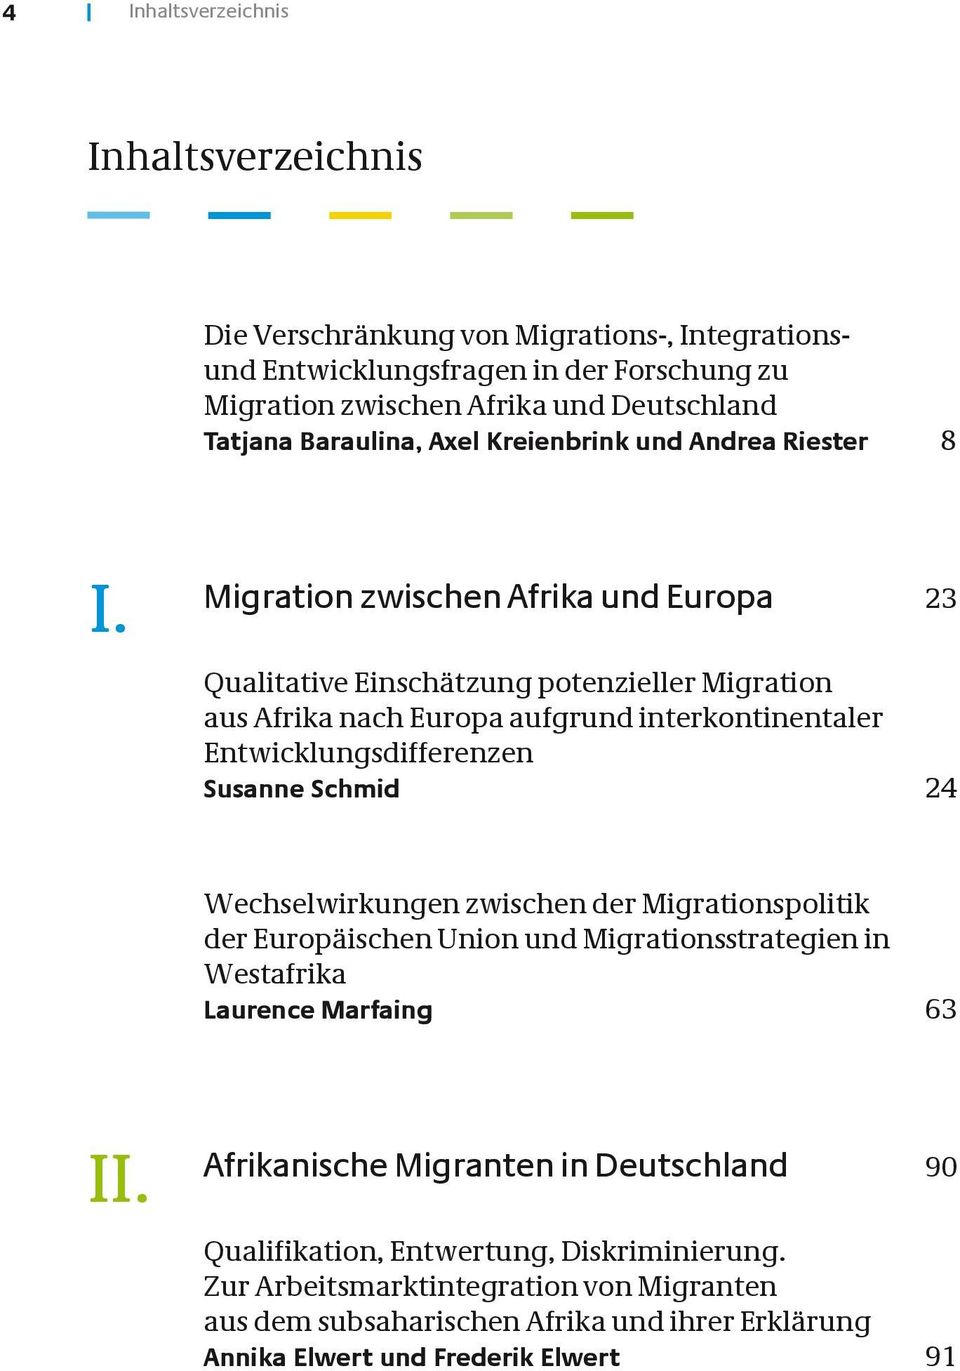 Migration zwischen Afrika und Europa 23 Qualitative Einschätzung potenzieller Migration aus Afrika nach Europa aufgrund interkontinentaler Entwicklungsdifferenzen Susanne Schmid 24